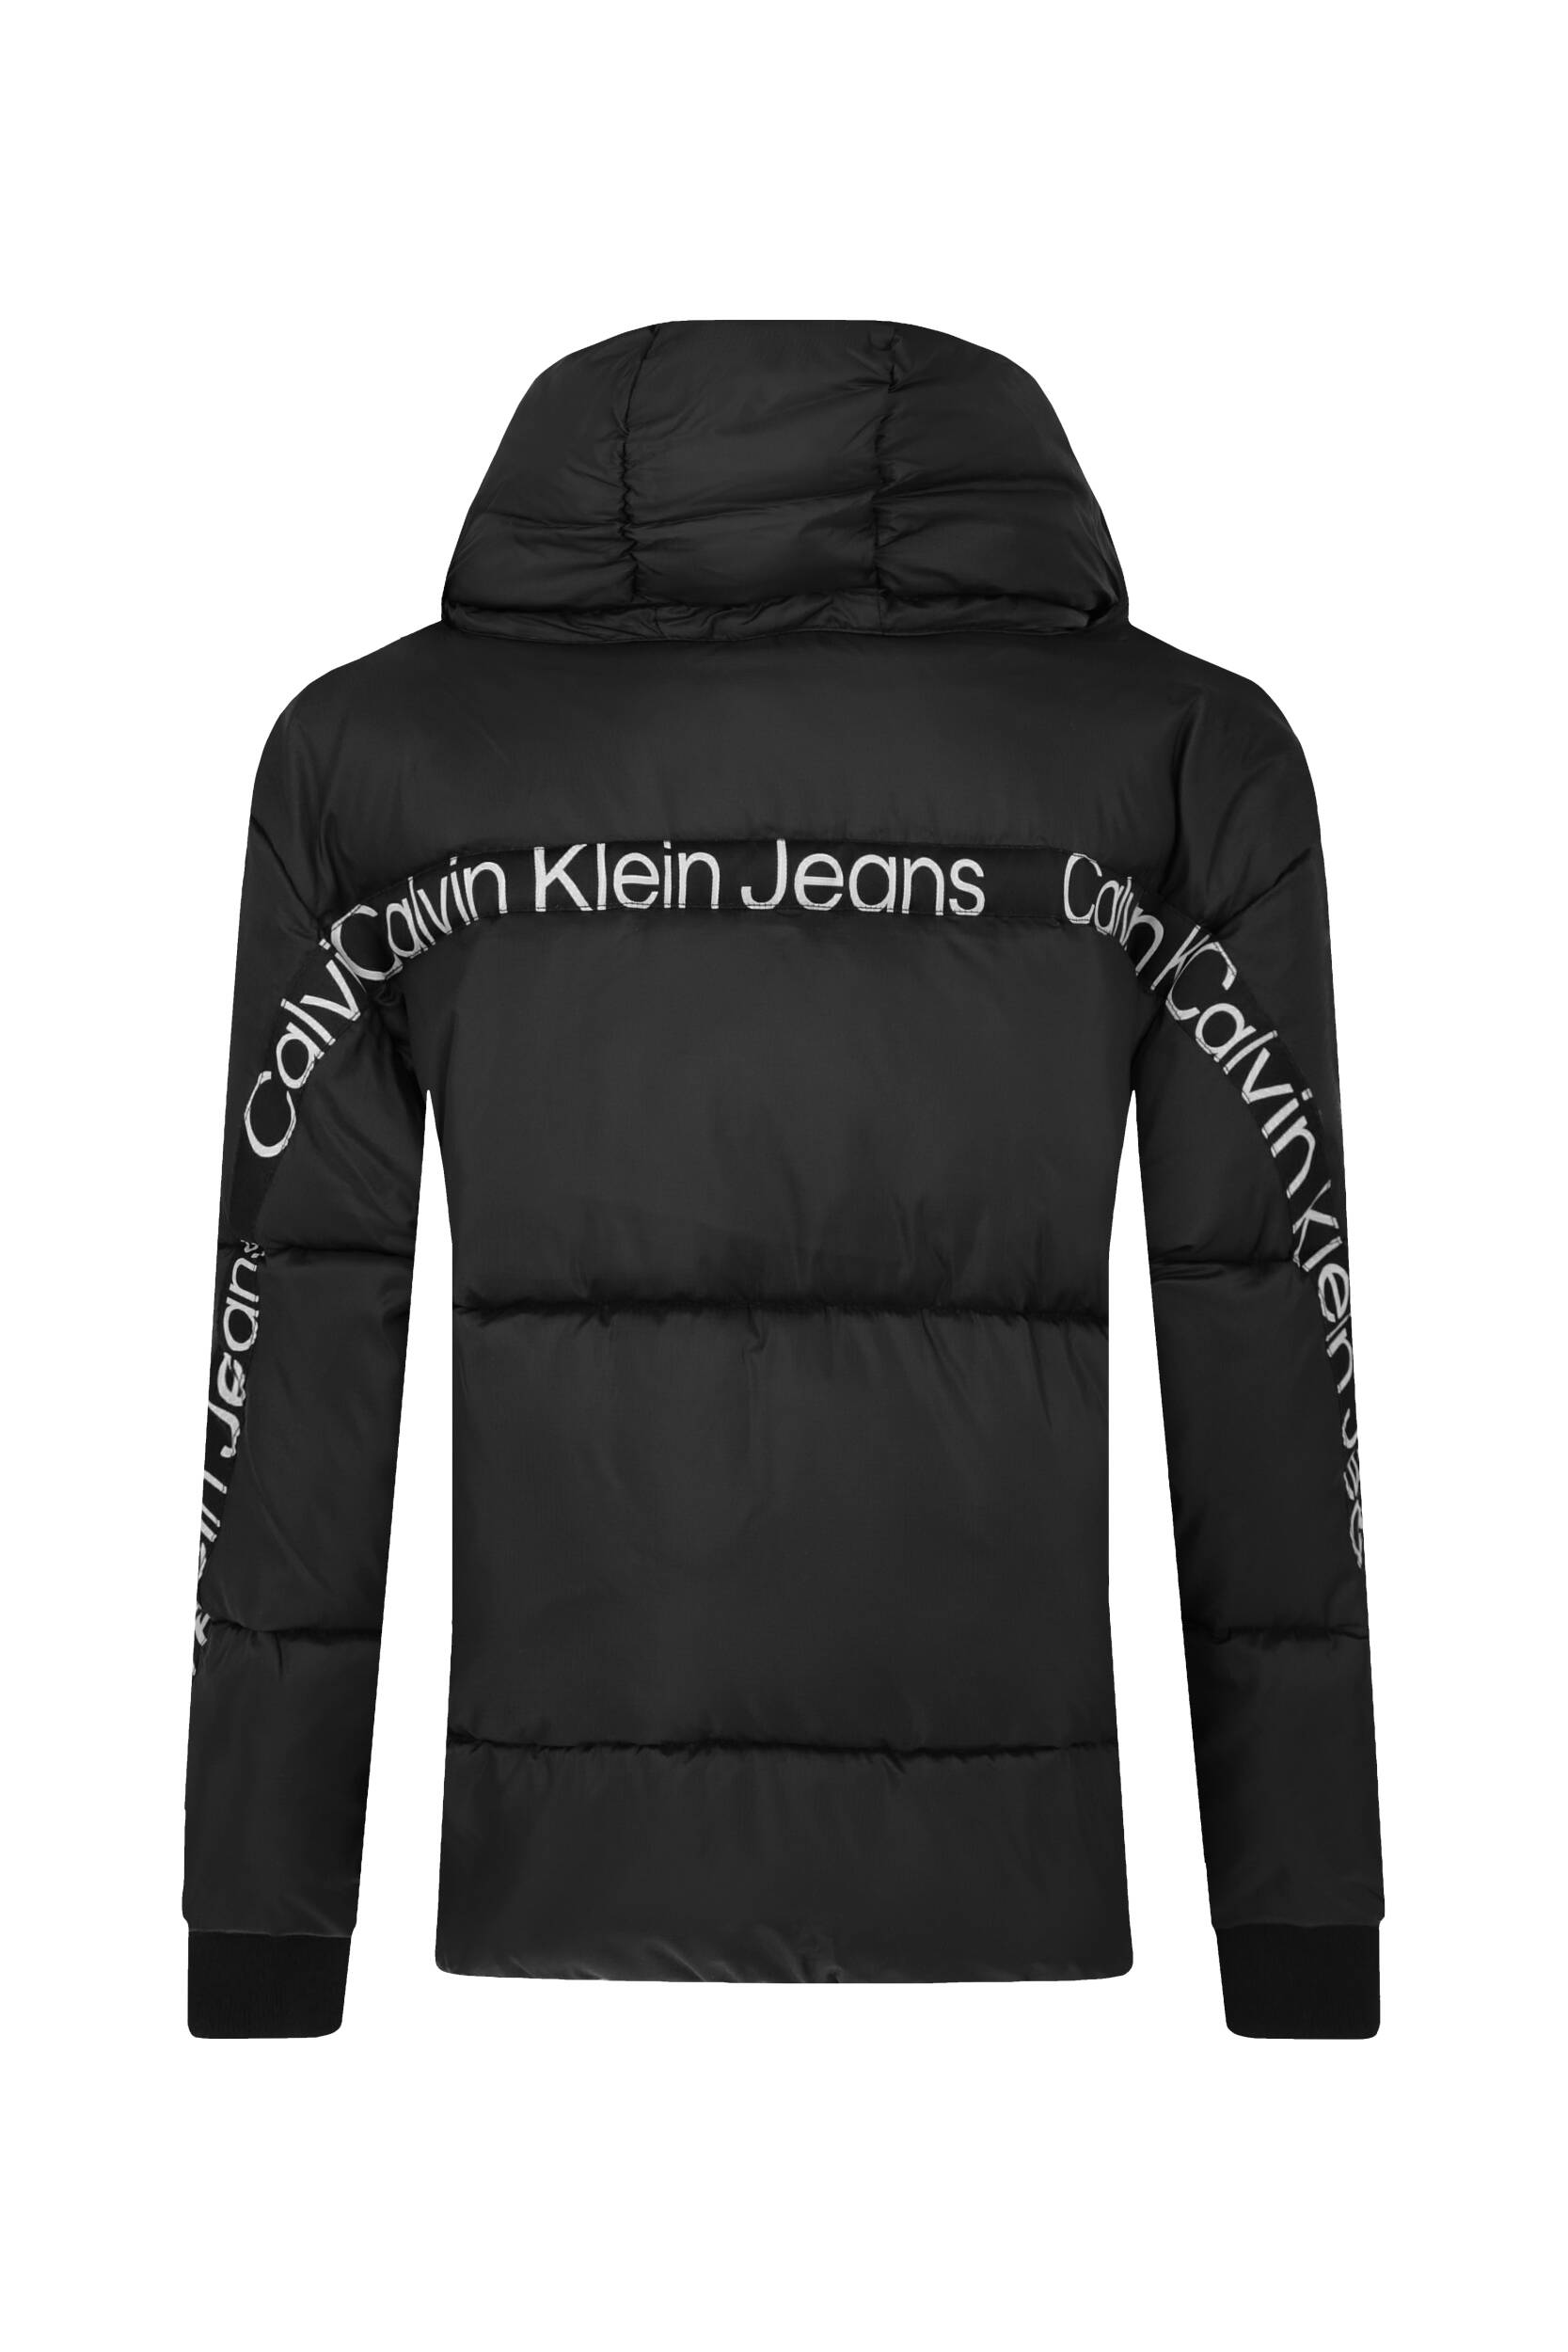 Jacket | Regular JEANS KLEIN Black CALVIN Fit 